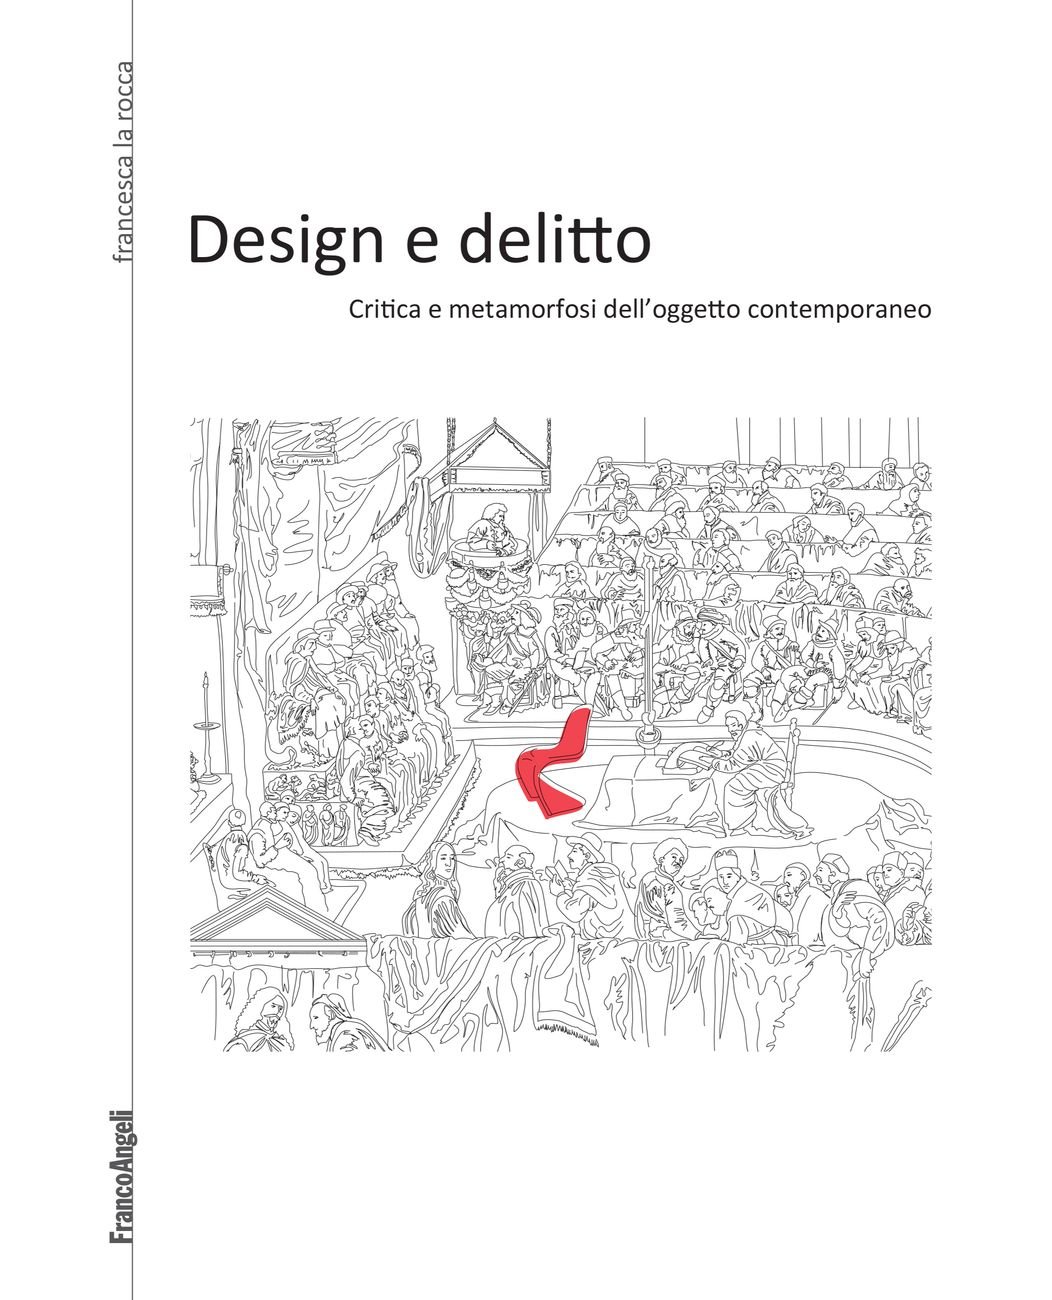 Francesca La Rocca ‒ Design e delitto (Franco Angeli, Milano 2017)